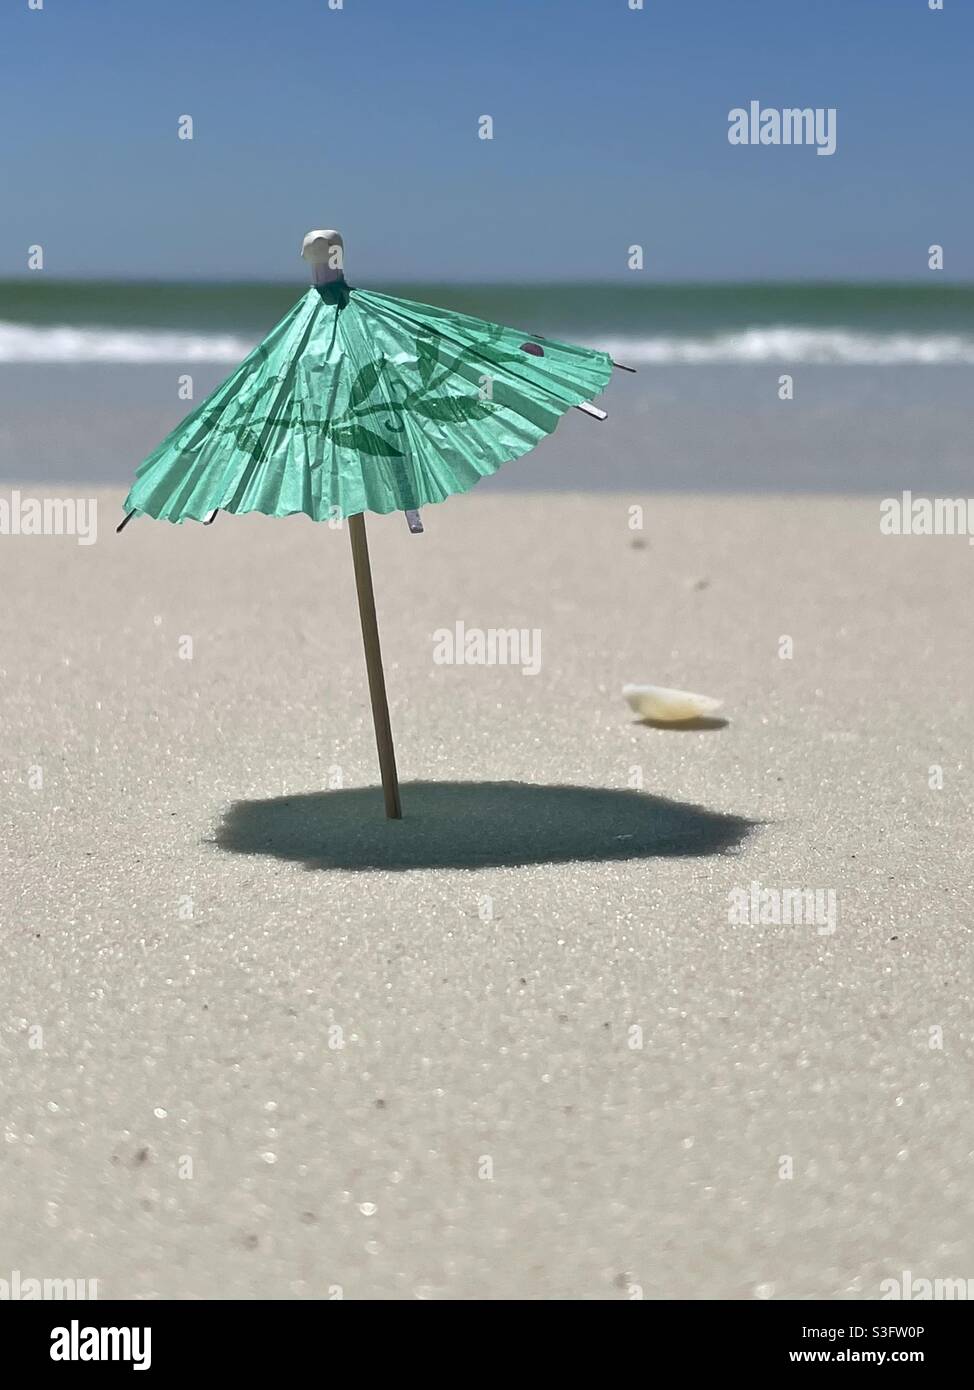 Seleccione el foco en una sombrilla en miniatura en la arena de la playa Foto de stock